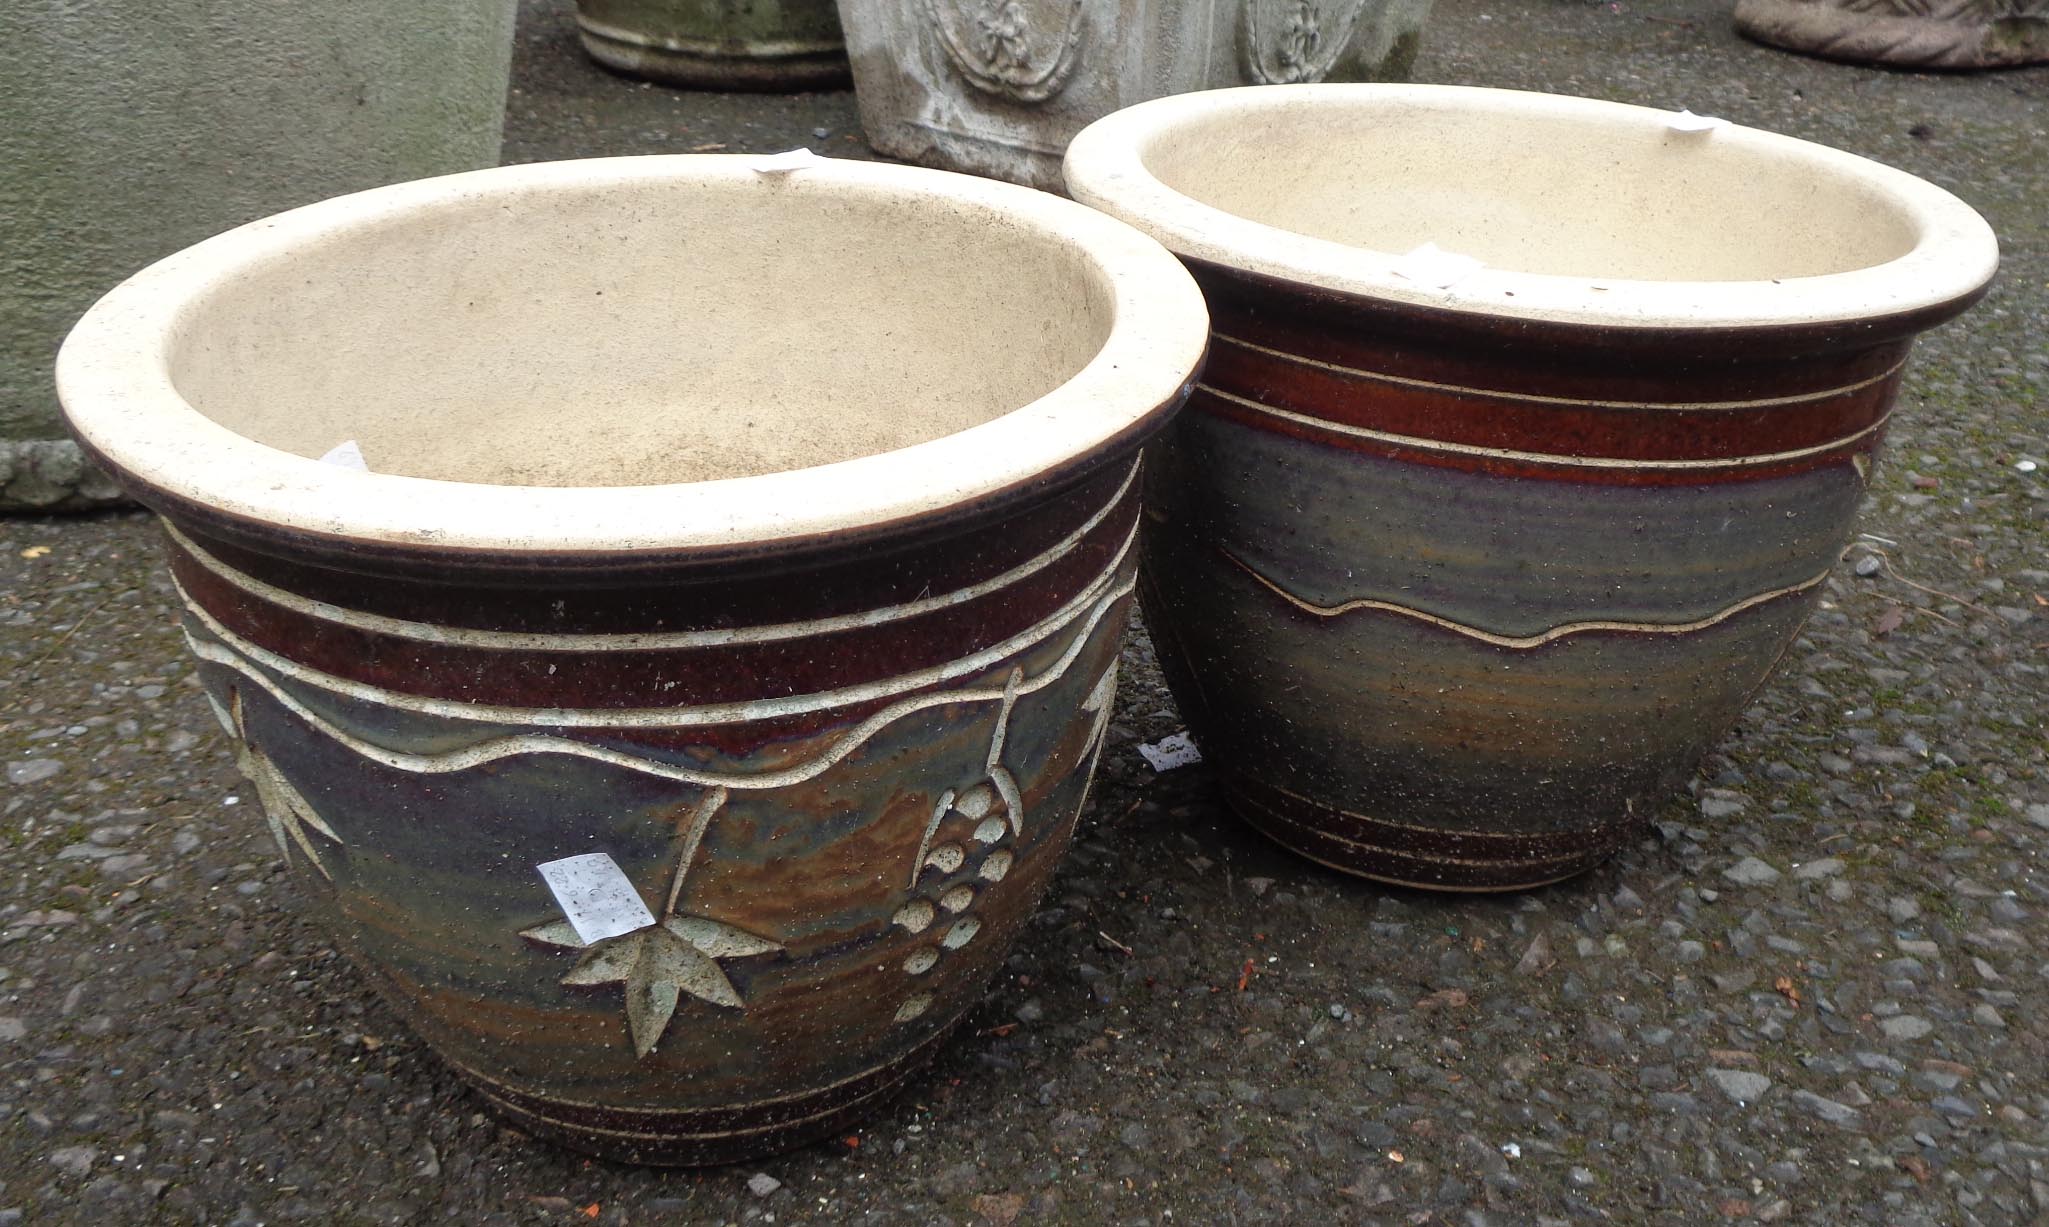 Two decorative plant pots